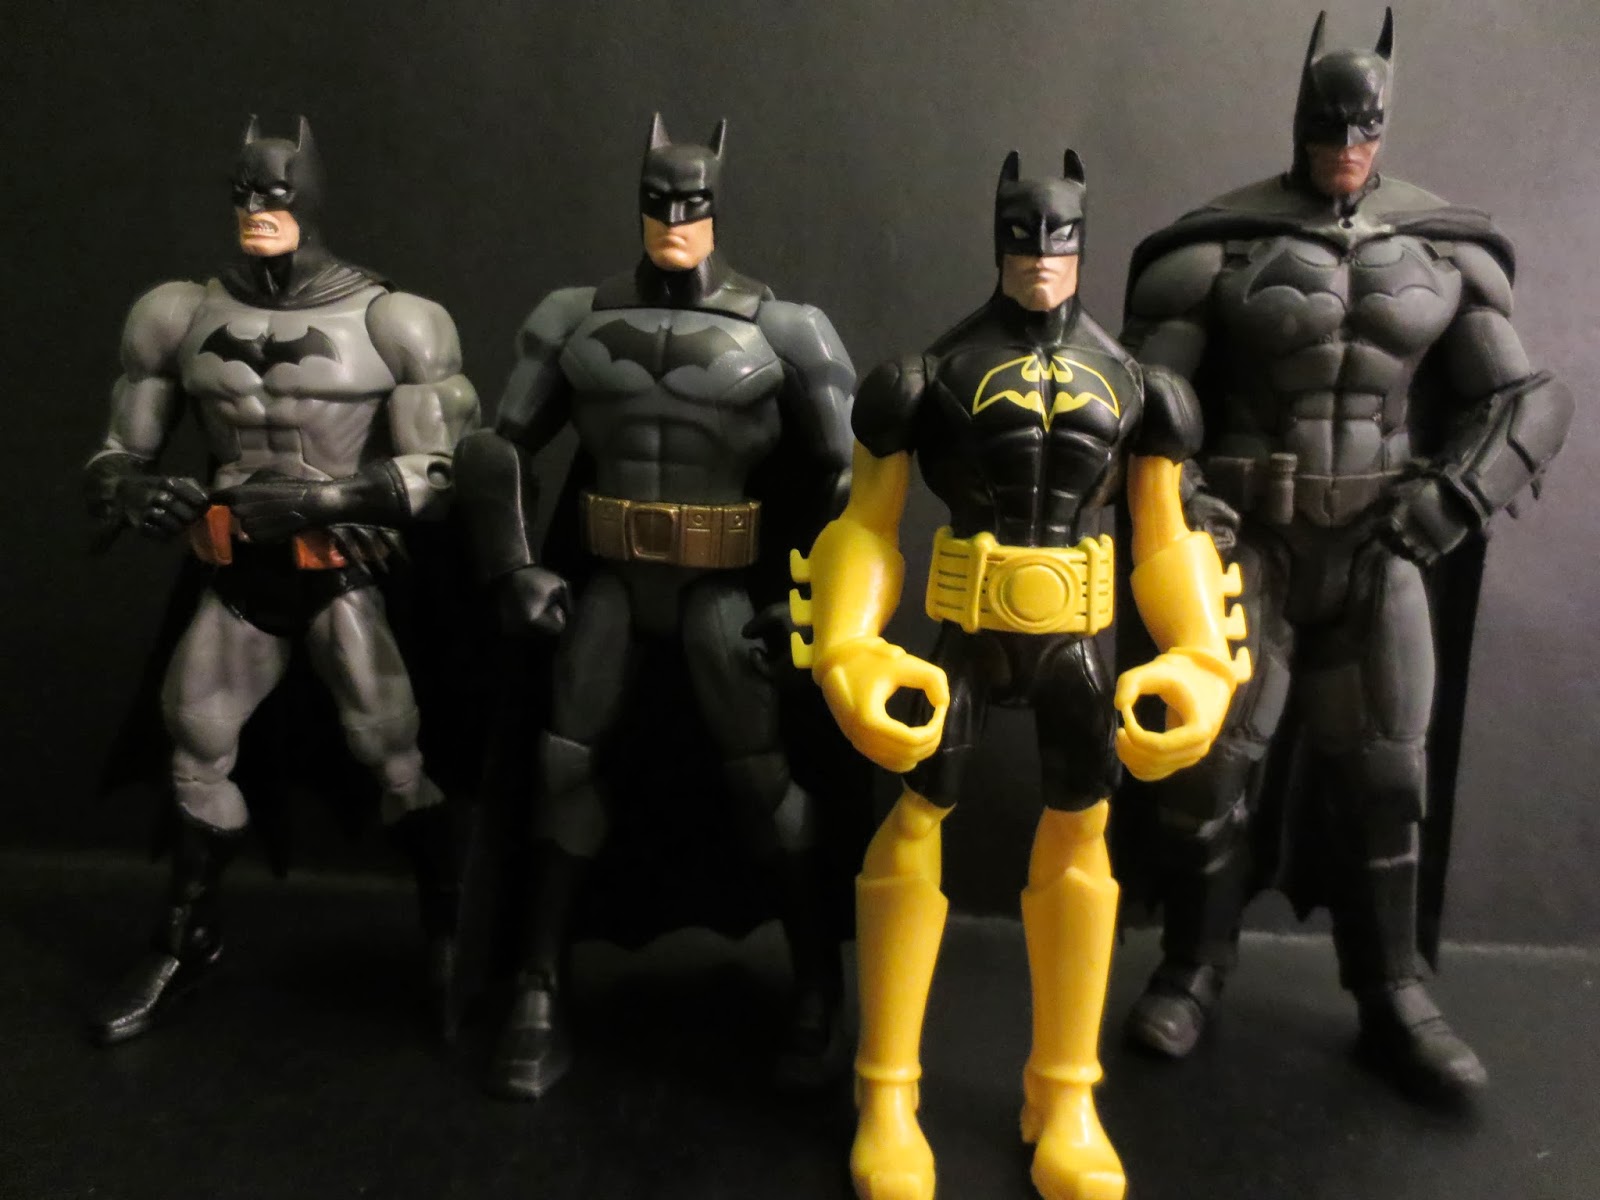 total heroes batman